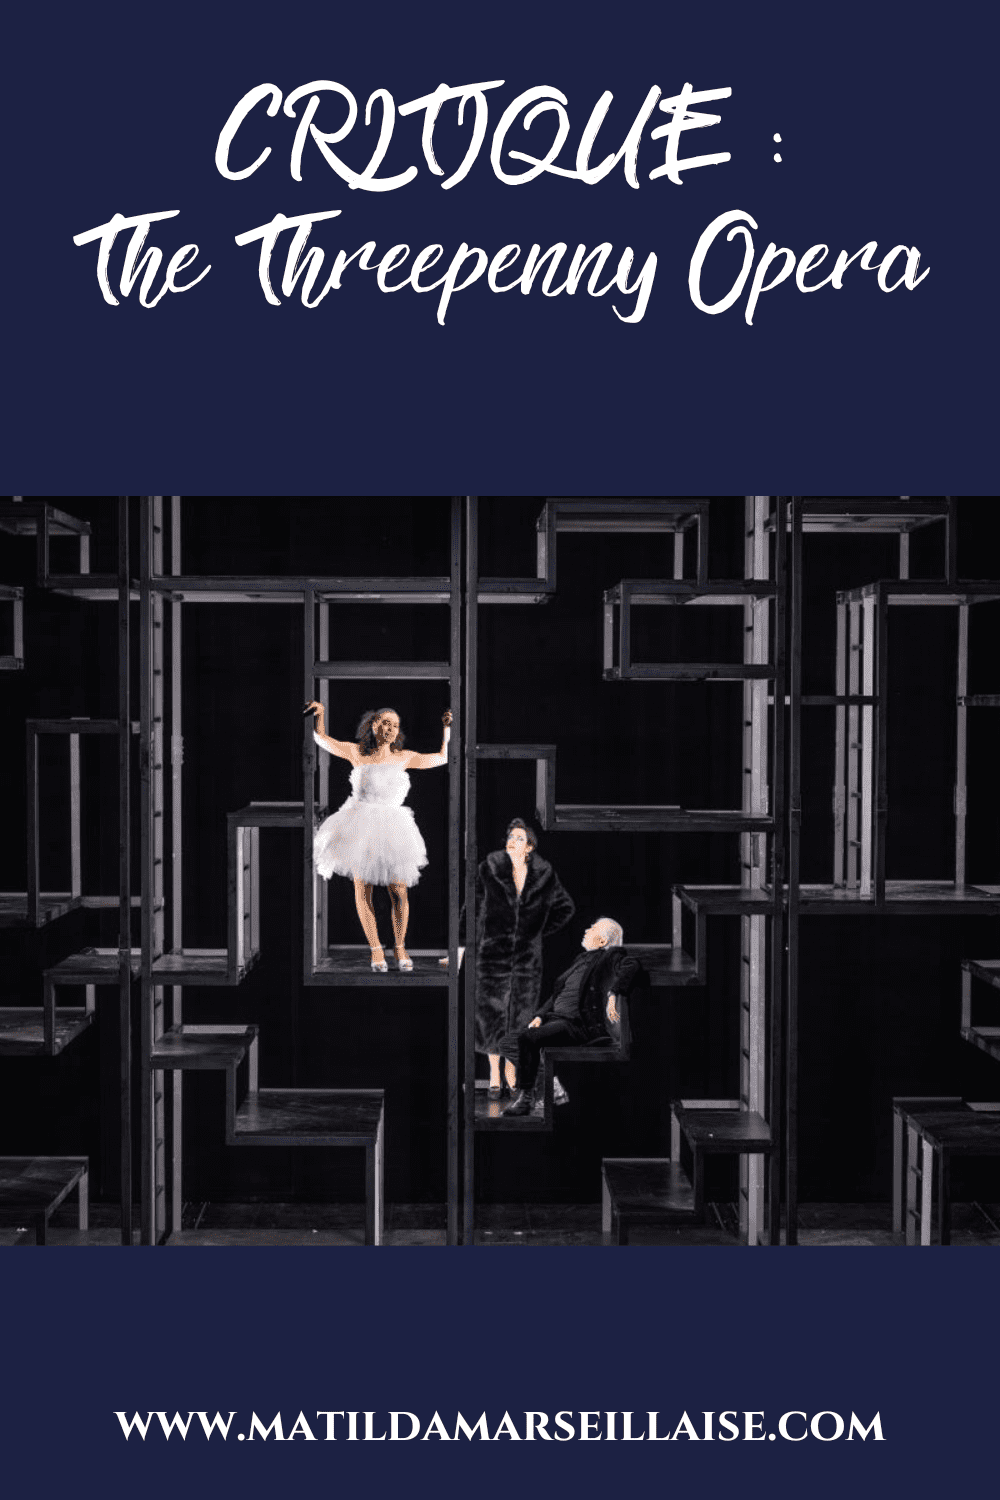 The Threepenny Opera de Barrie Kosky est d’une absurdité sans pareille